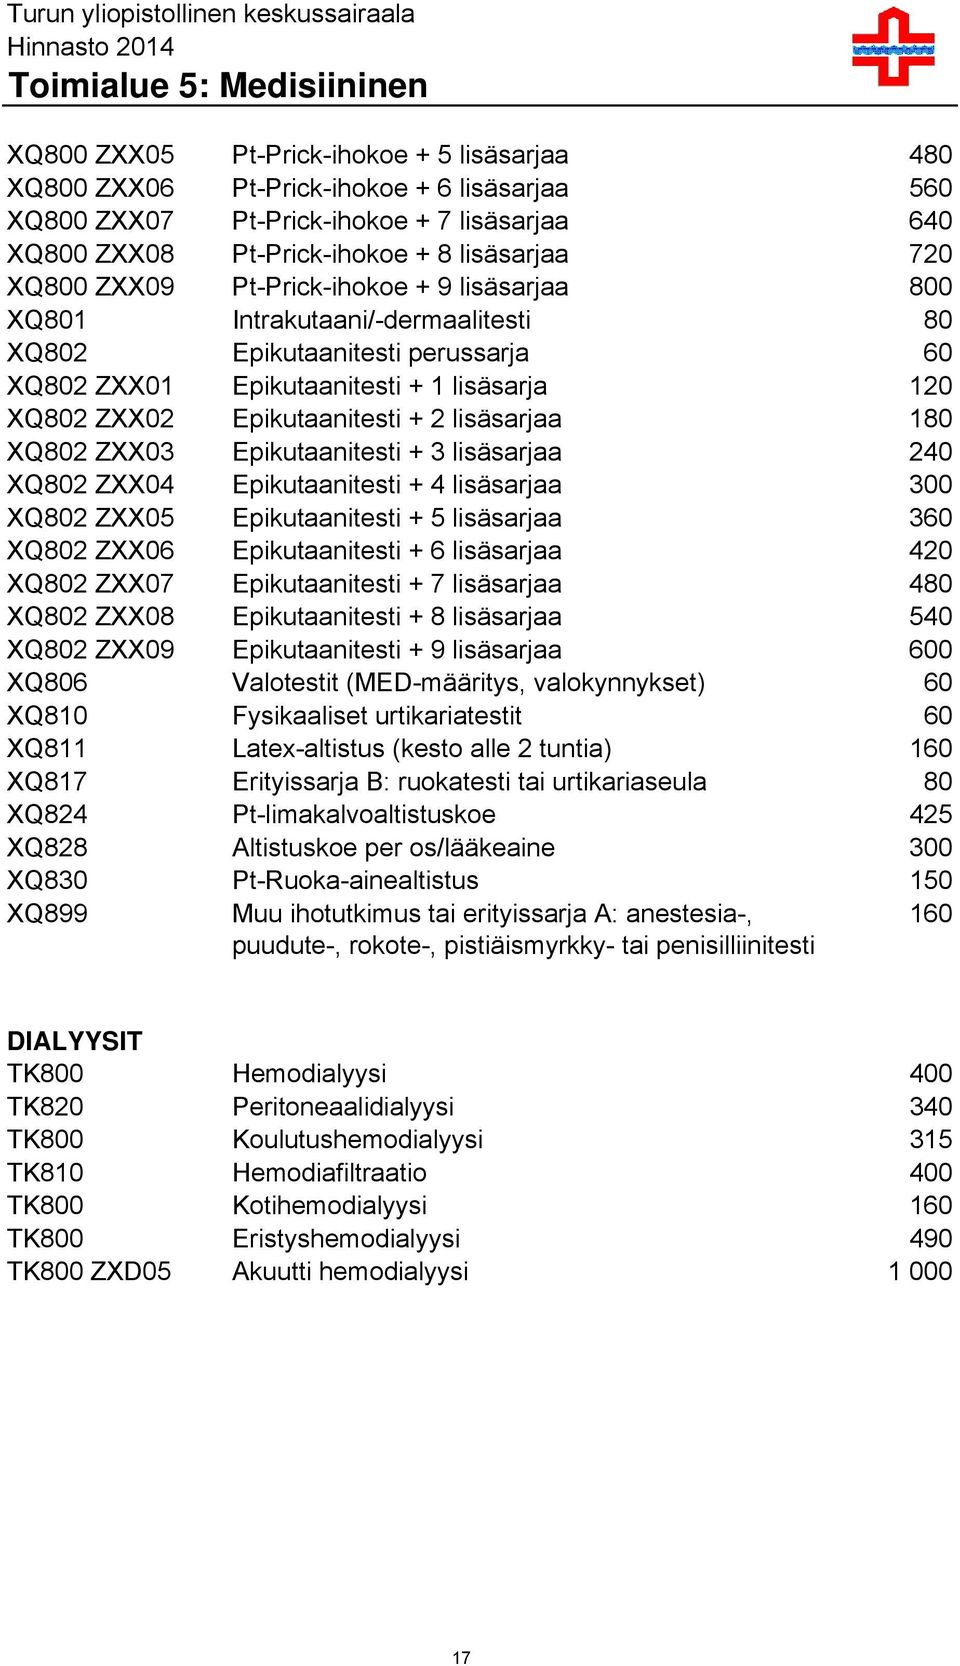 Epikutaanitesti + 1 lisäsarja 120 XQ802 ZXX02 Epikutaanitesti + 2 lisäsarjaa 180 XQ802 ZXX03 Epikutaanitesti + 3 lisäsarjaa 240 XQ802 ZXX04 Epikutaanitesti + 4 lisäsarjaa 300 XQ802 ZXX05